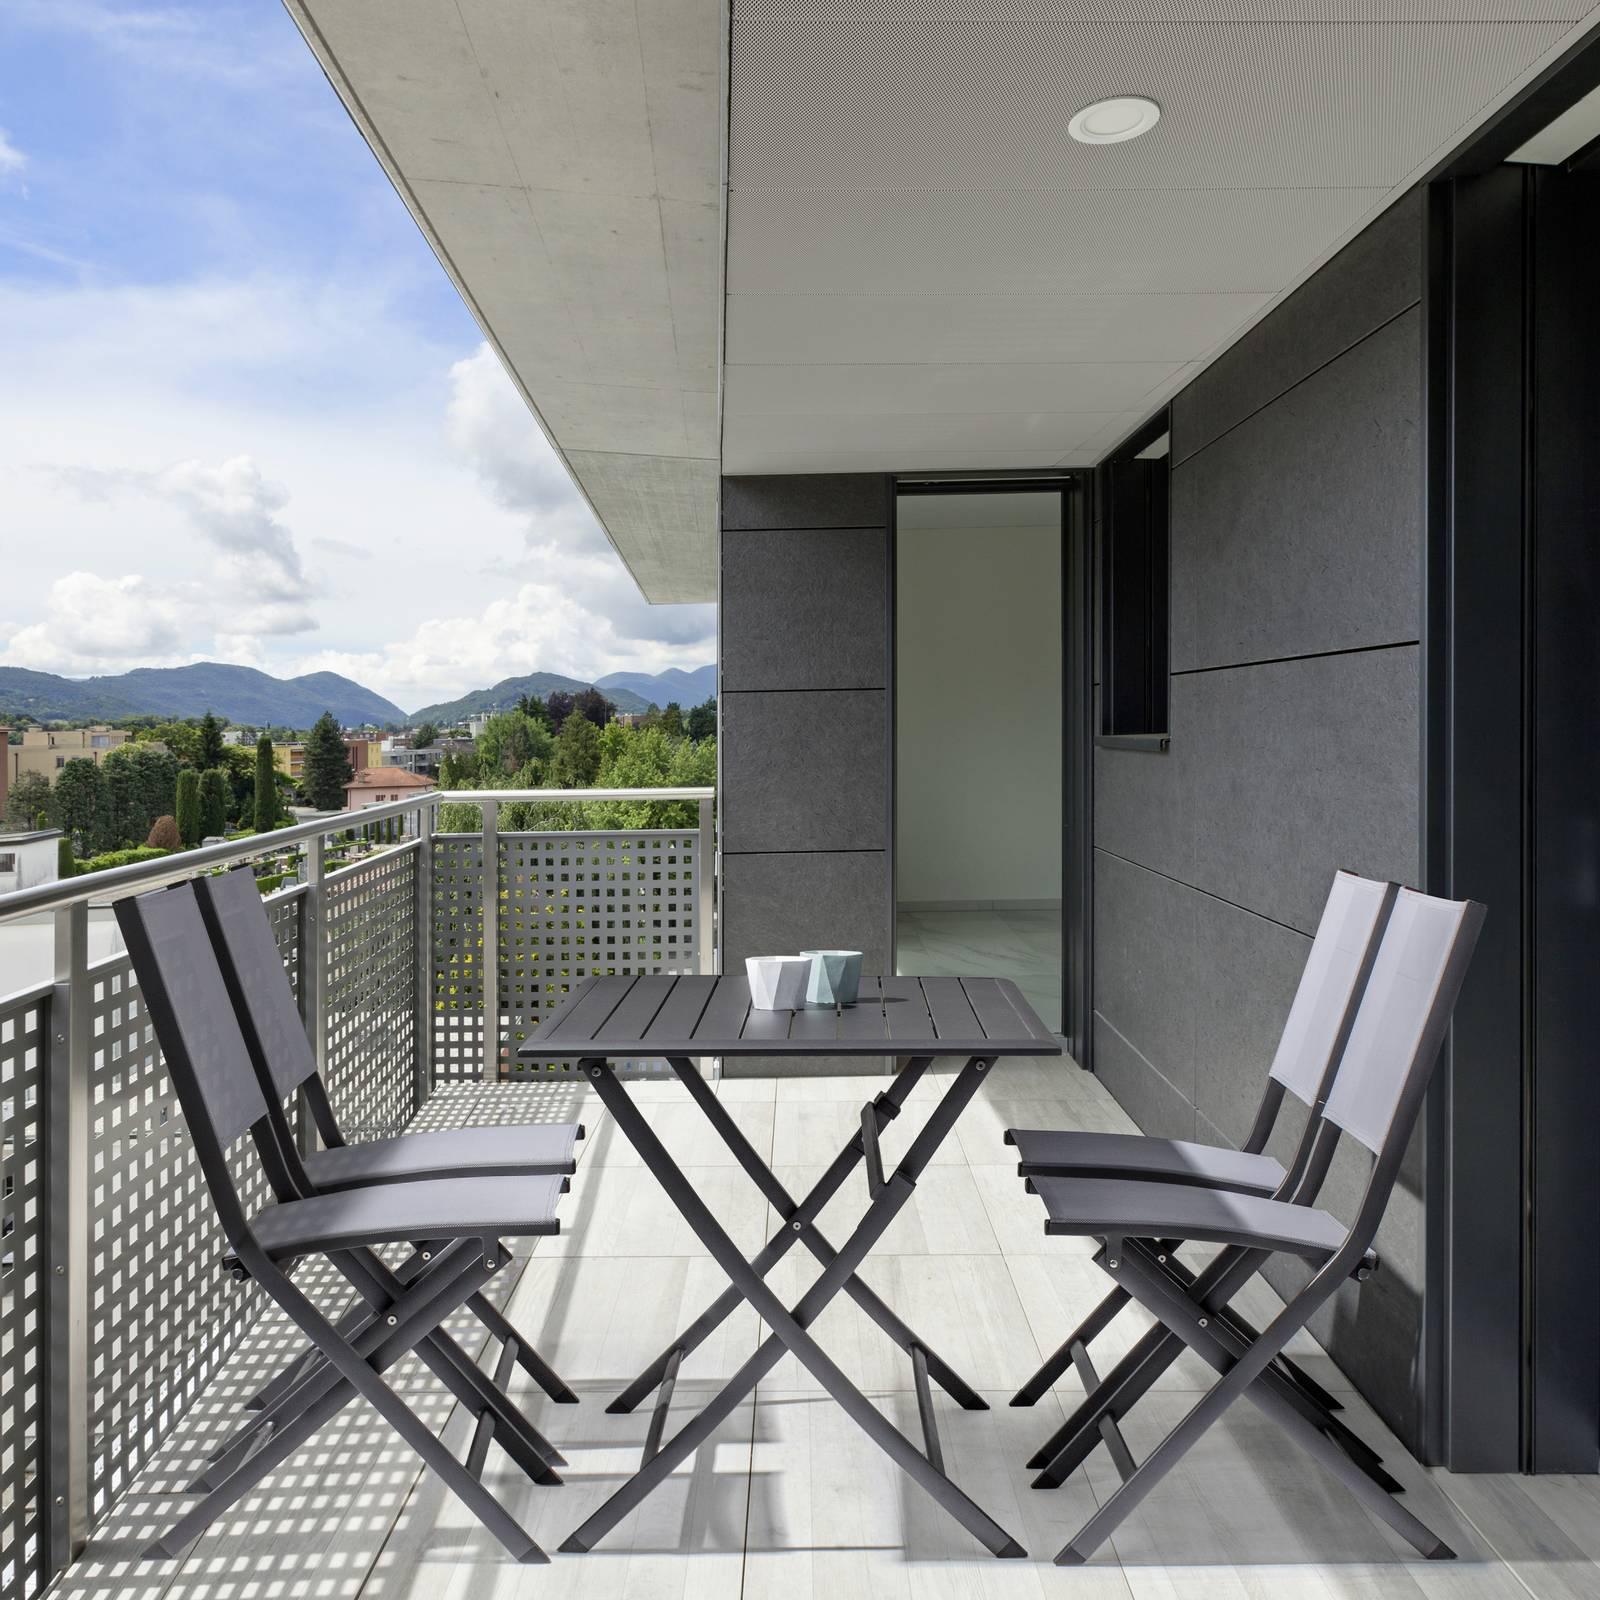 Tavoli e sedie da esterno: varietà di materiali e stili - Cose di Casa